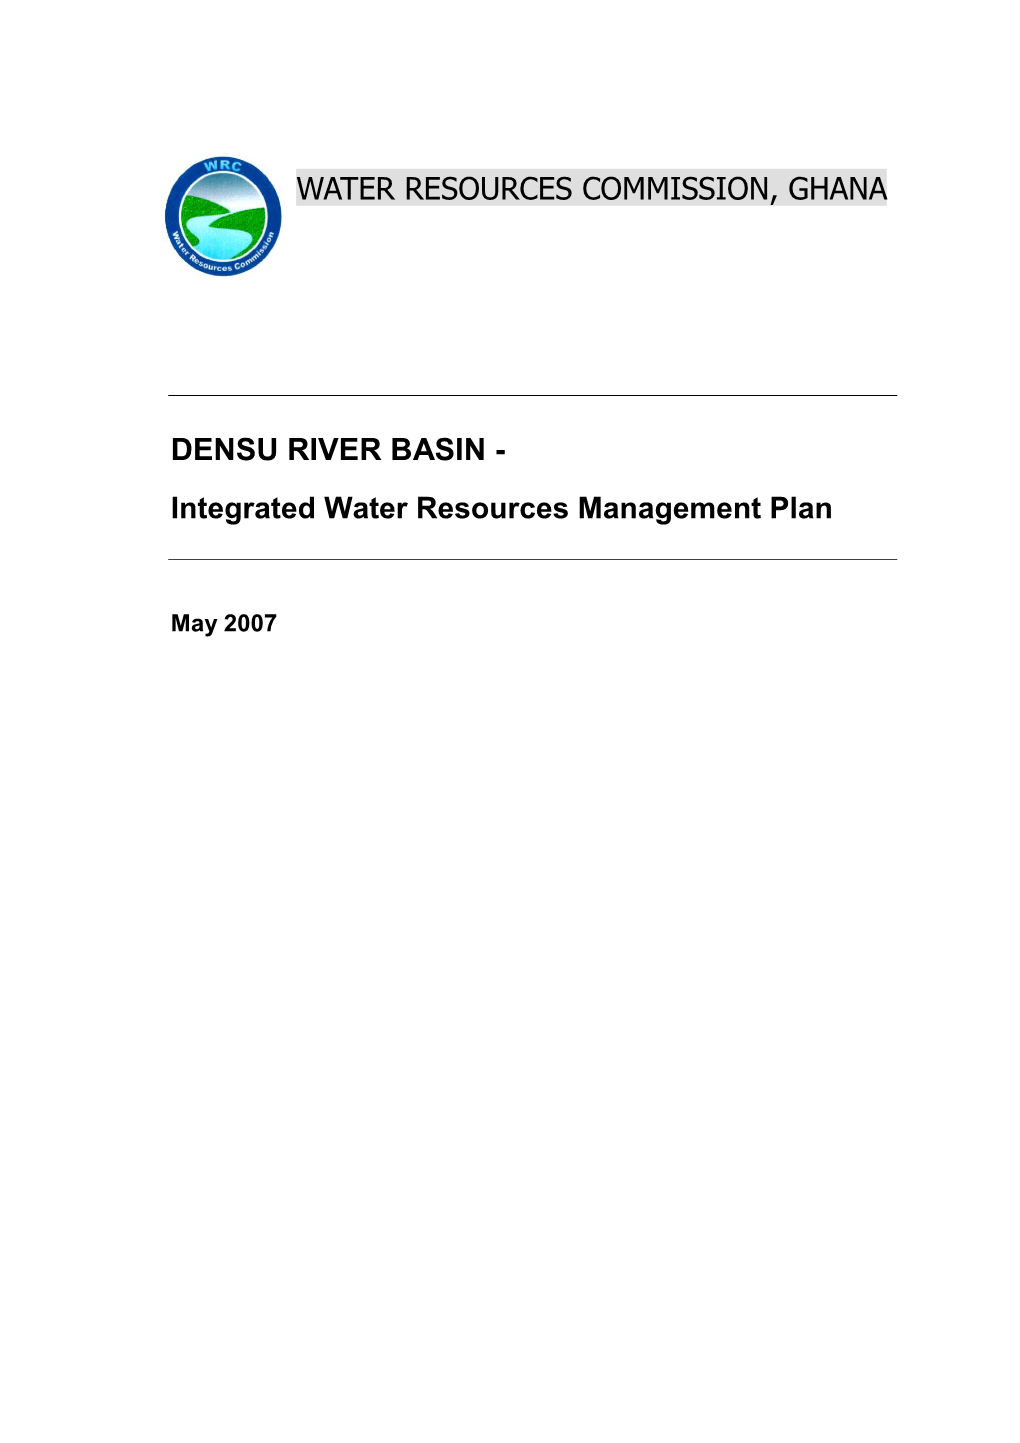 Densu Basin IWRM Planning